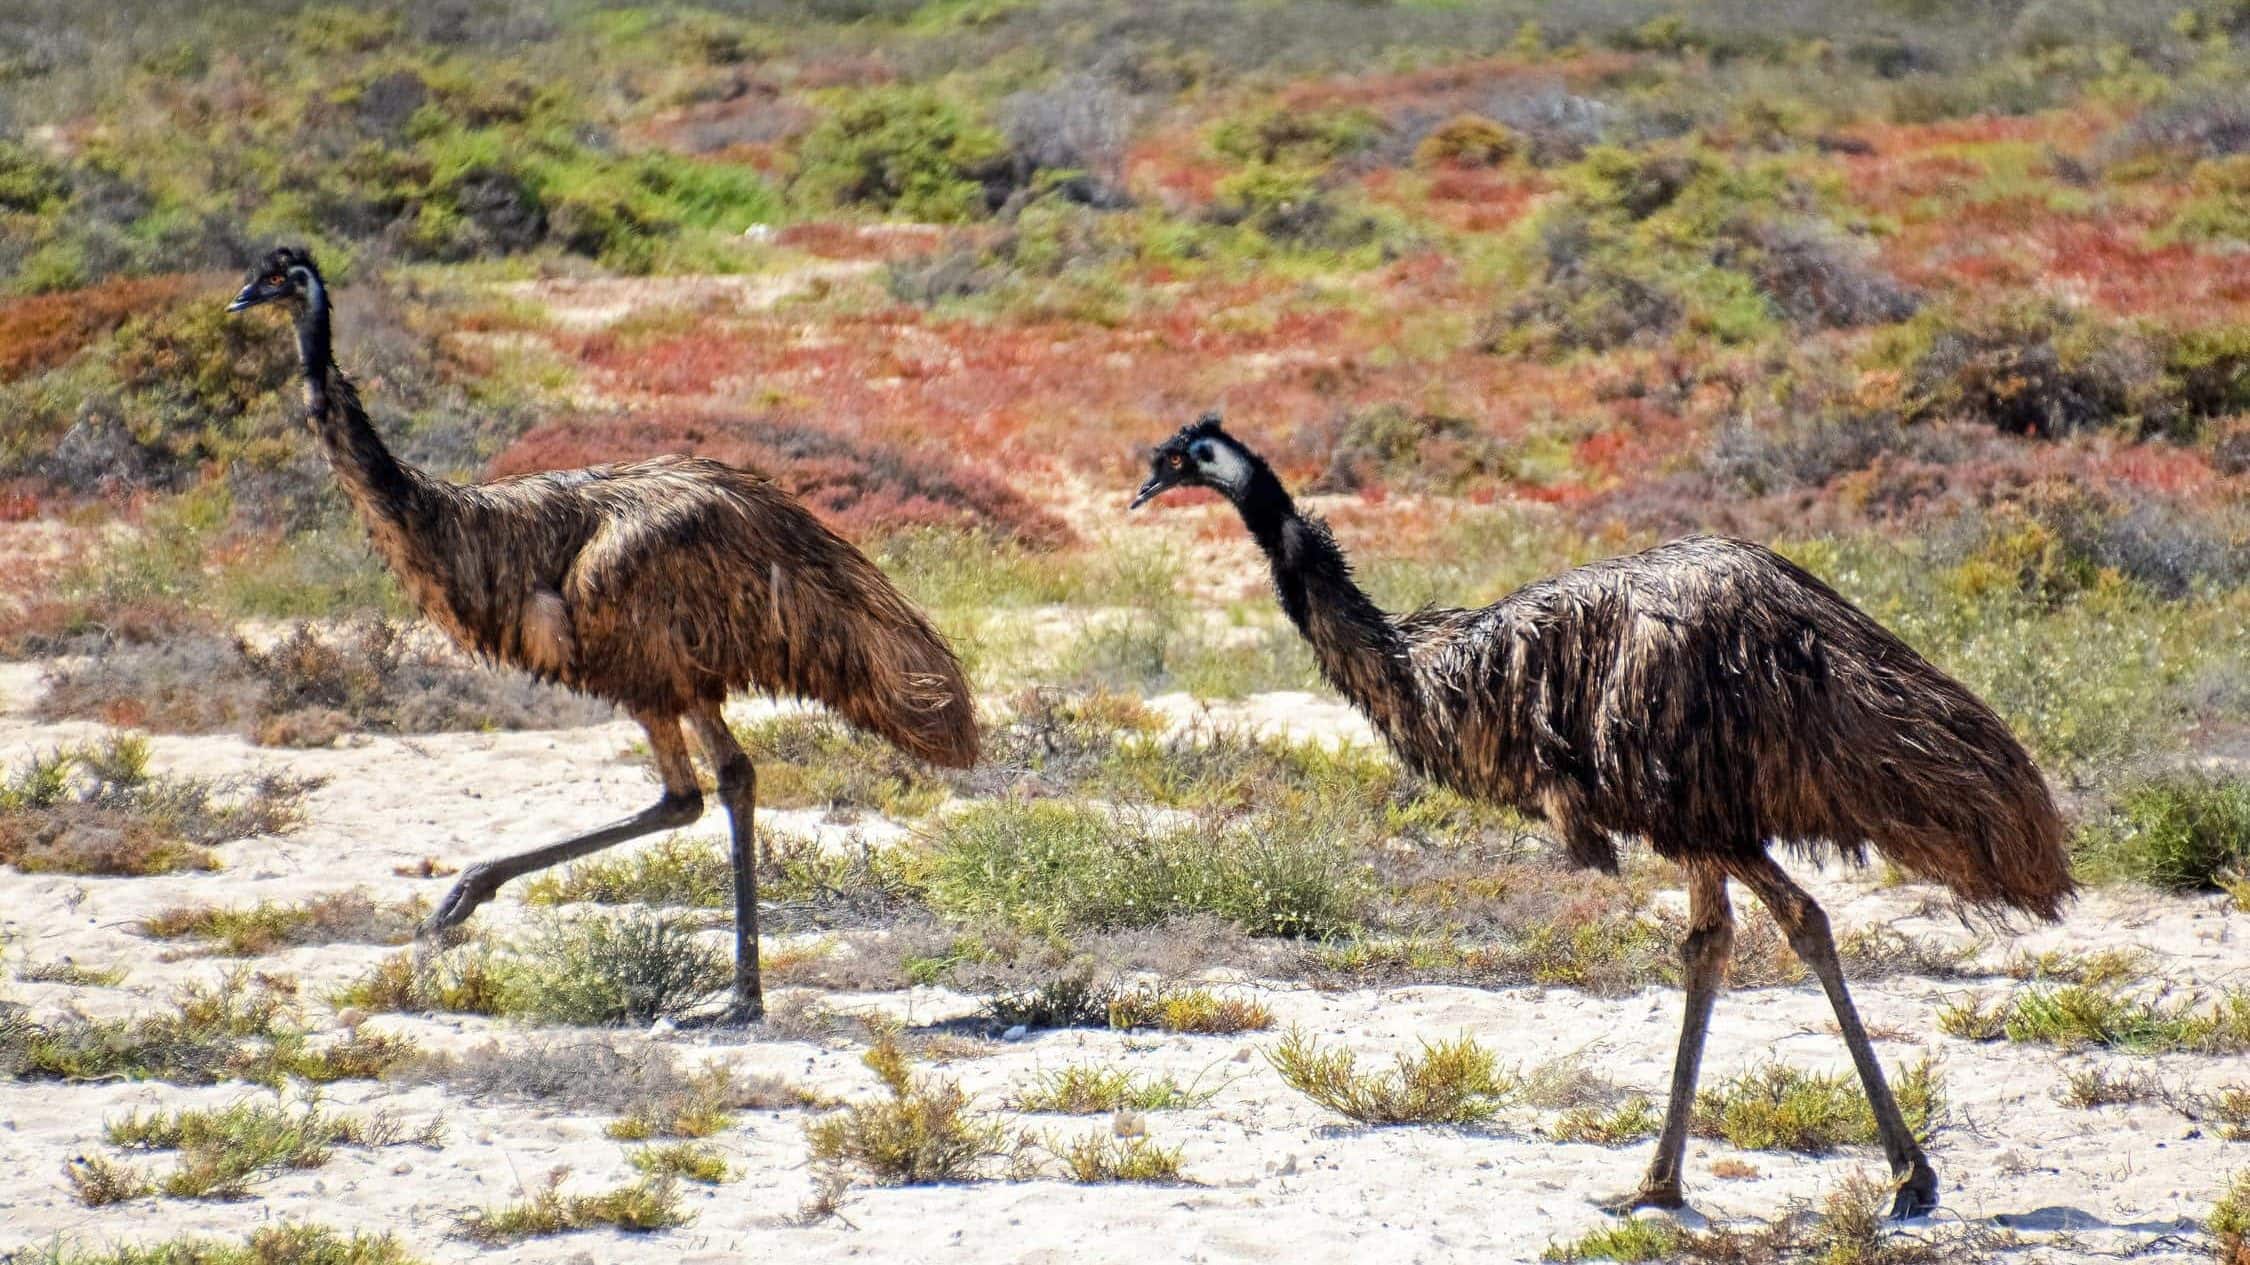 Emu pair